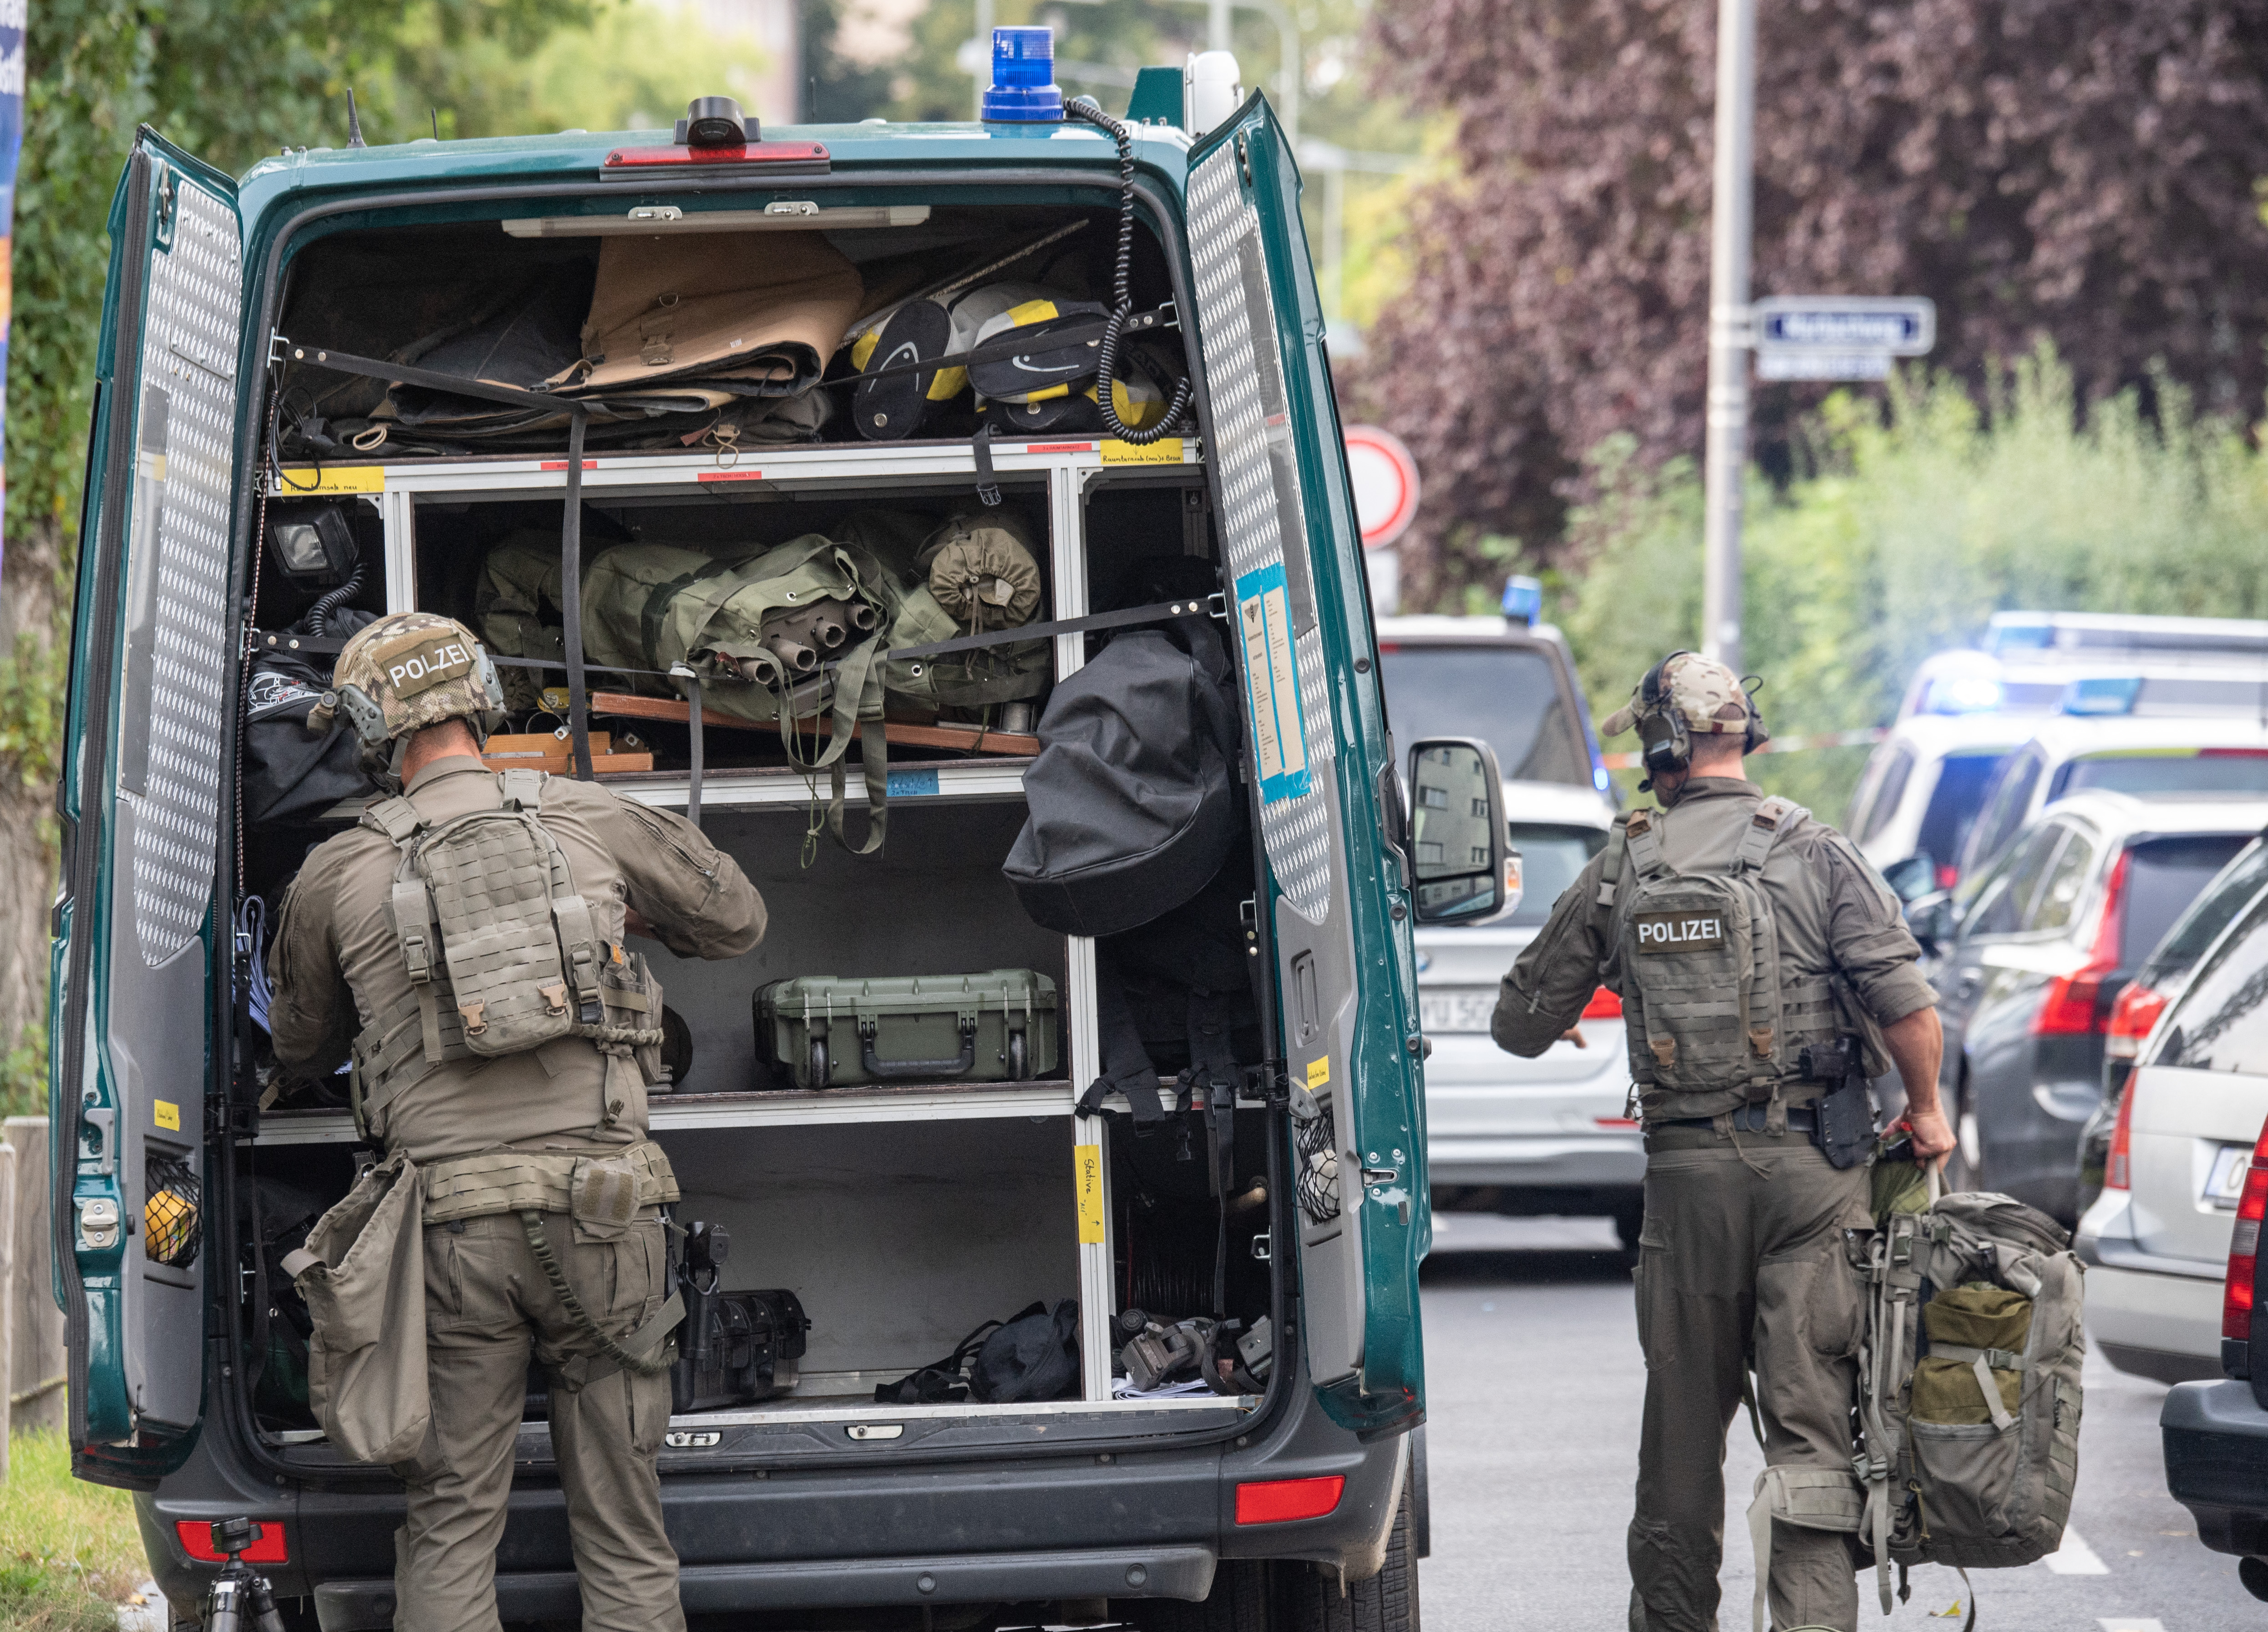 Őrizetbe vett a német rendőrség egy férfit, aki azzal fenyegetőzött egy buszon, hogy mindenkit megöl